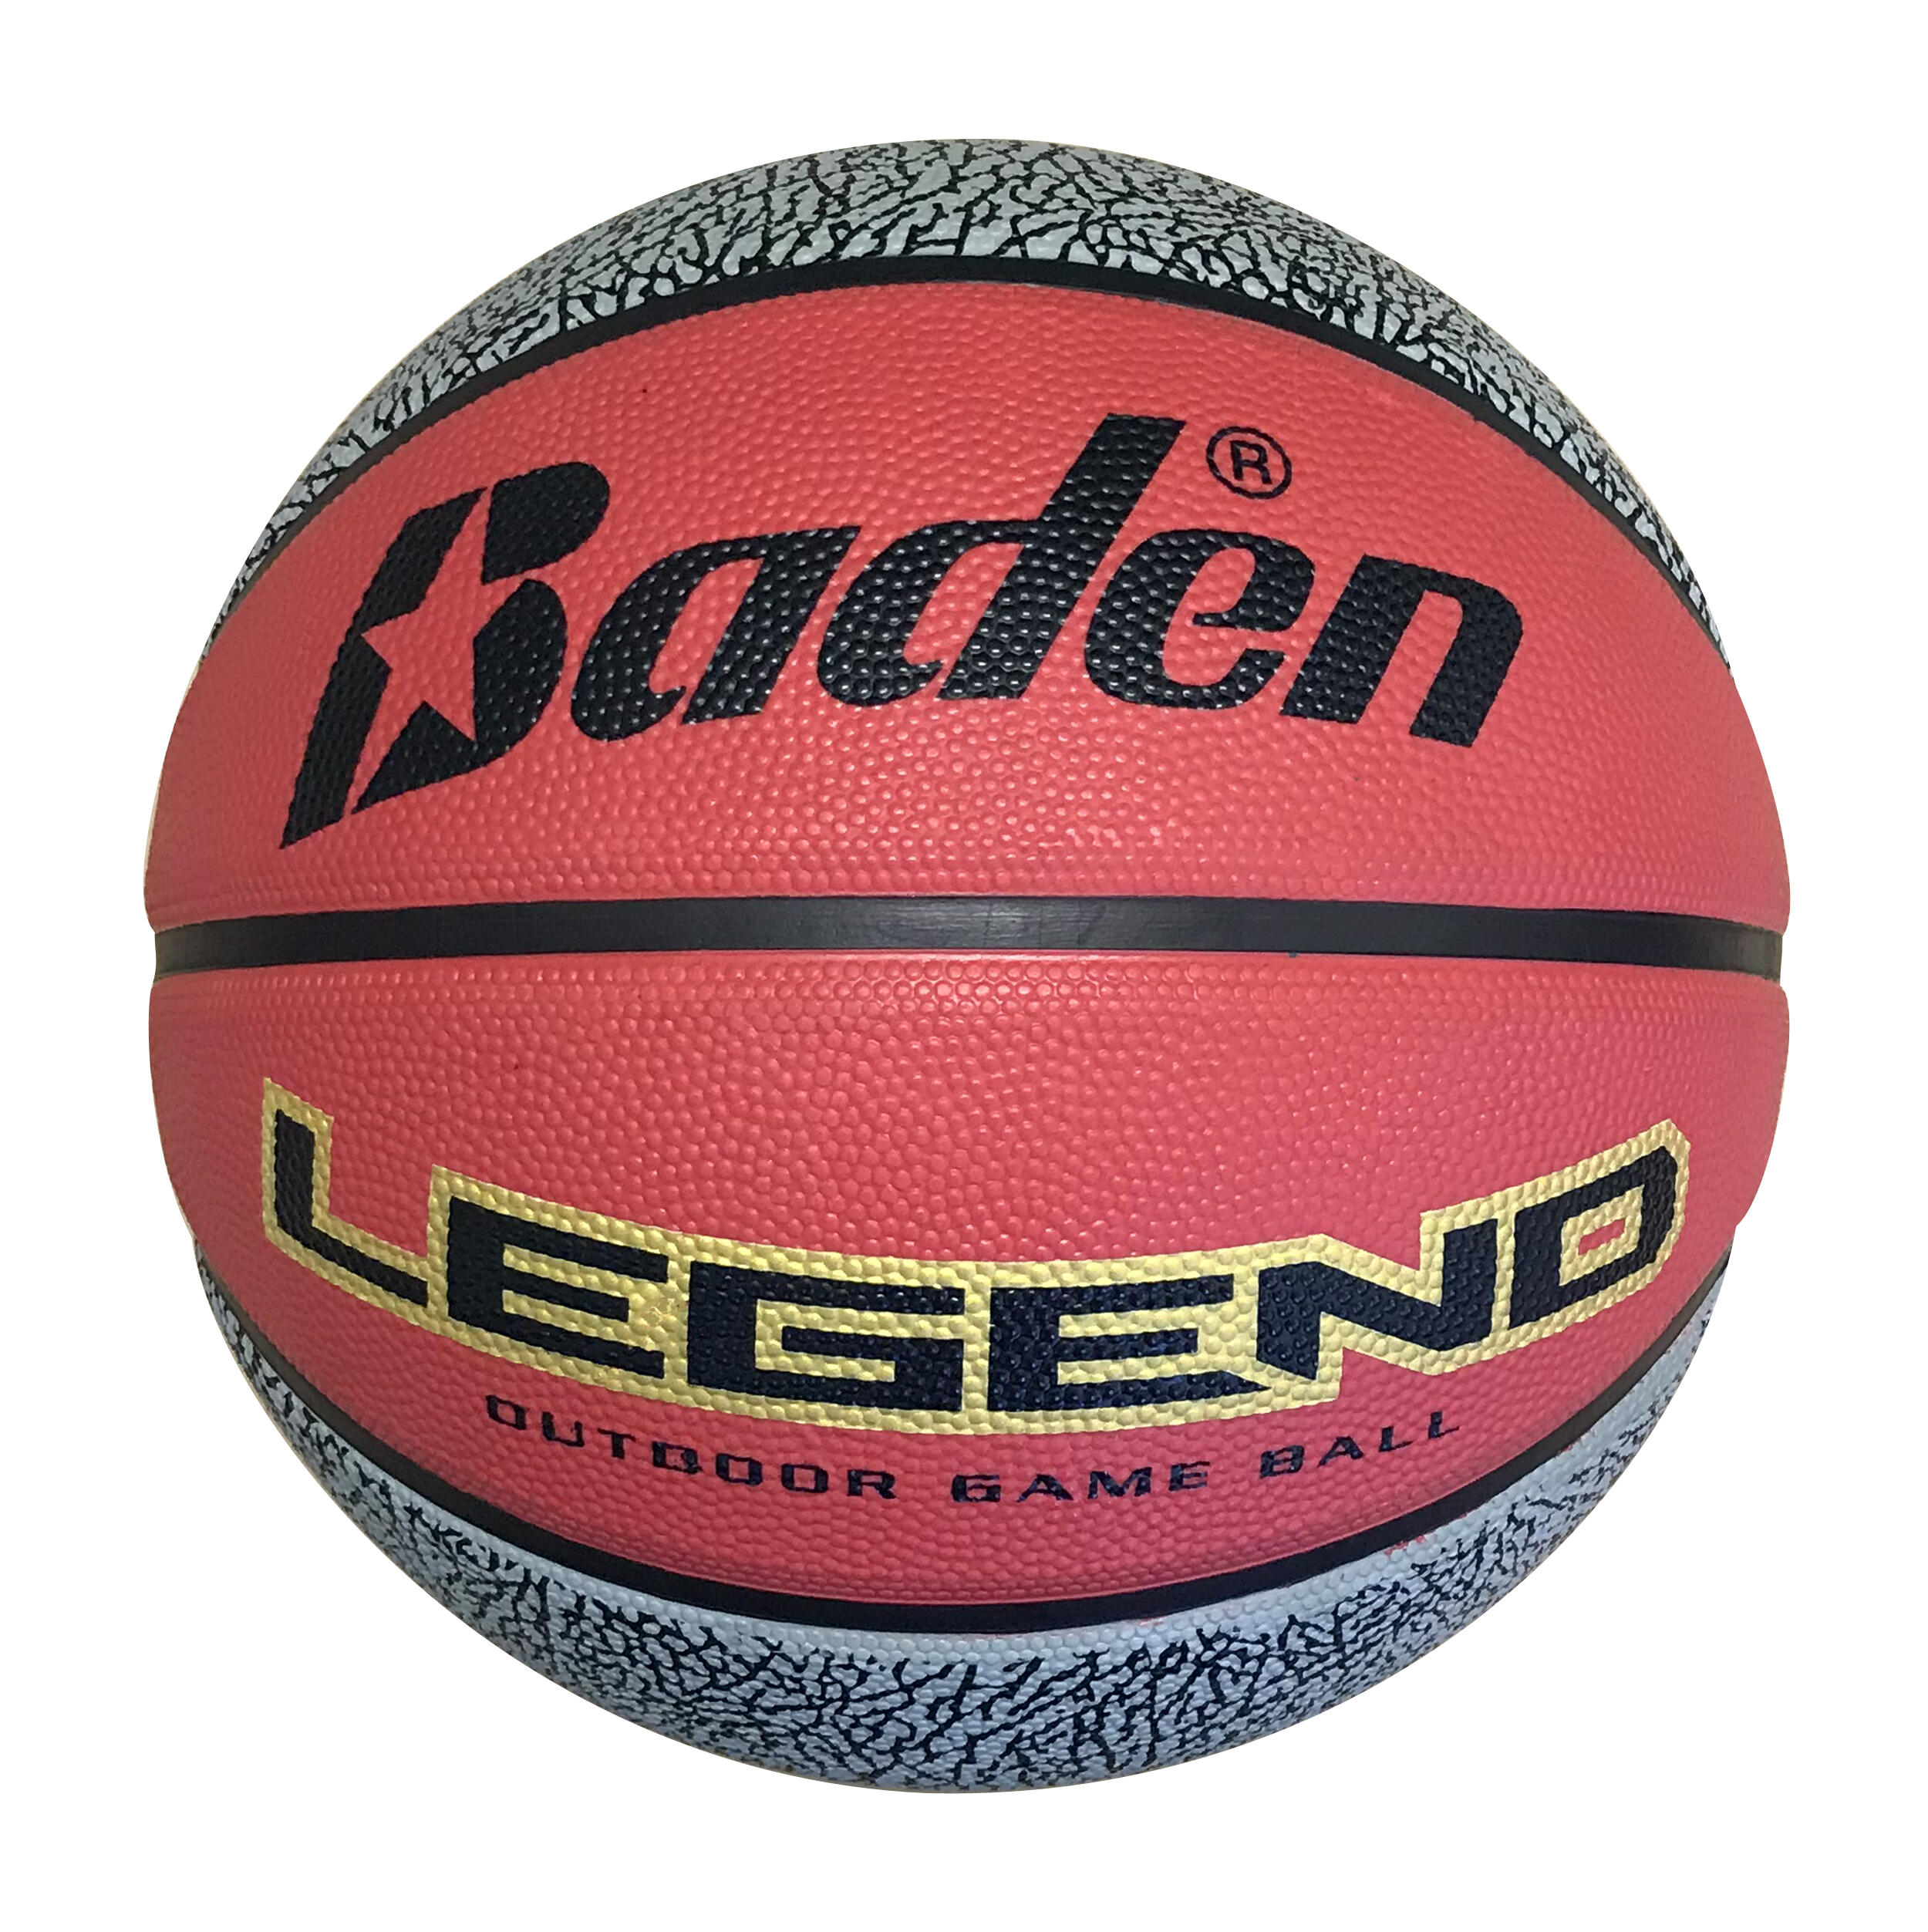 BADEN Baden Legend Size 7 Basketball - Red / Black